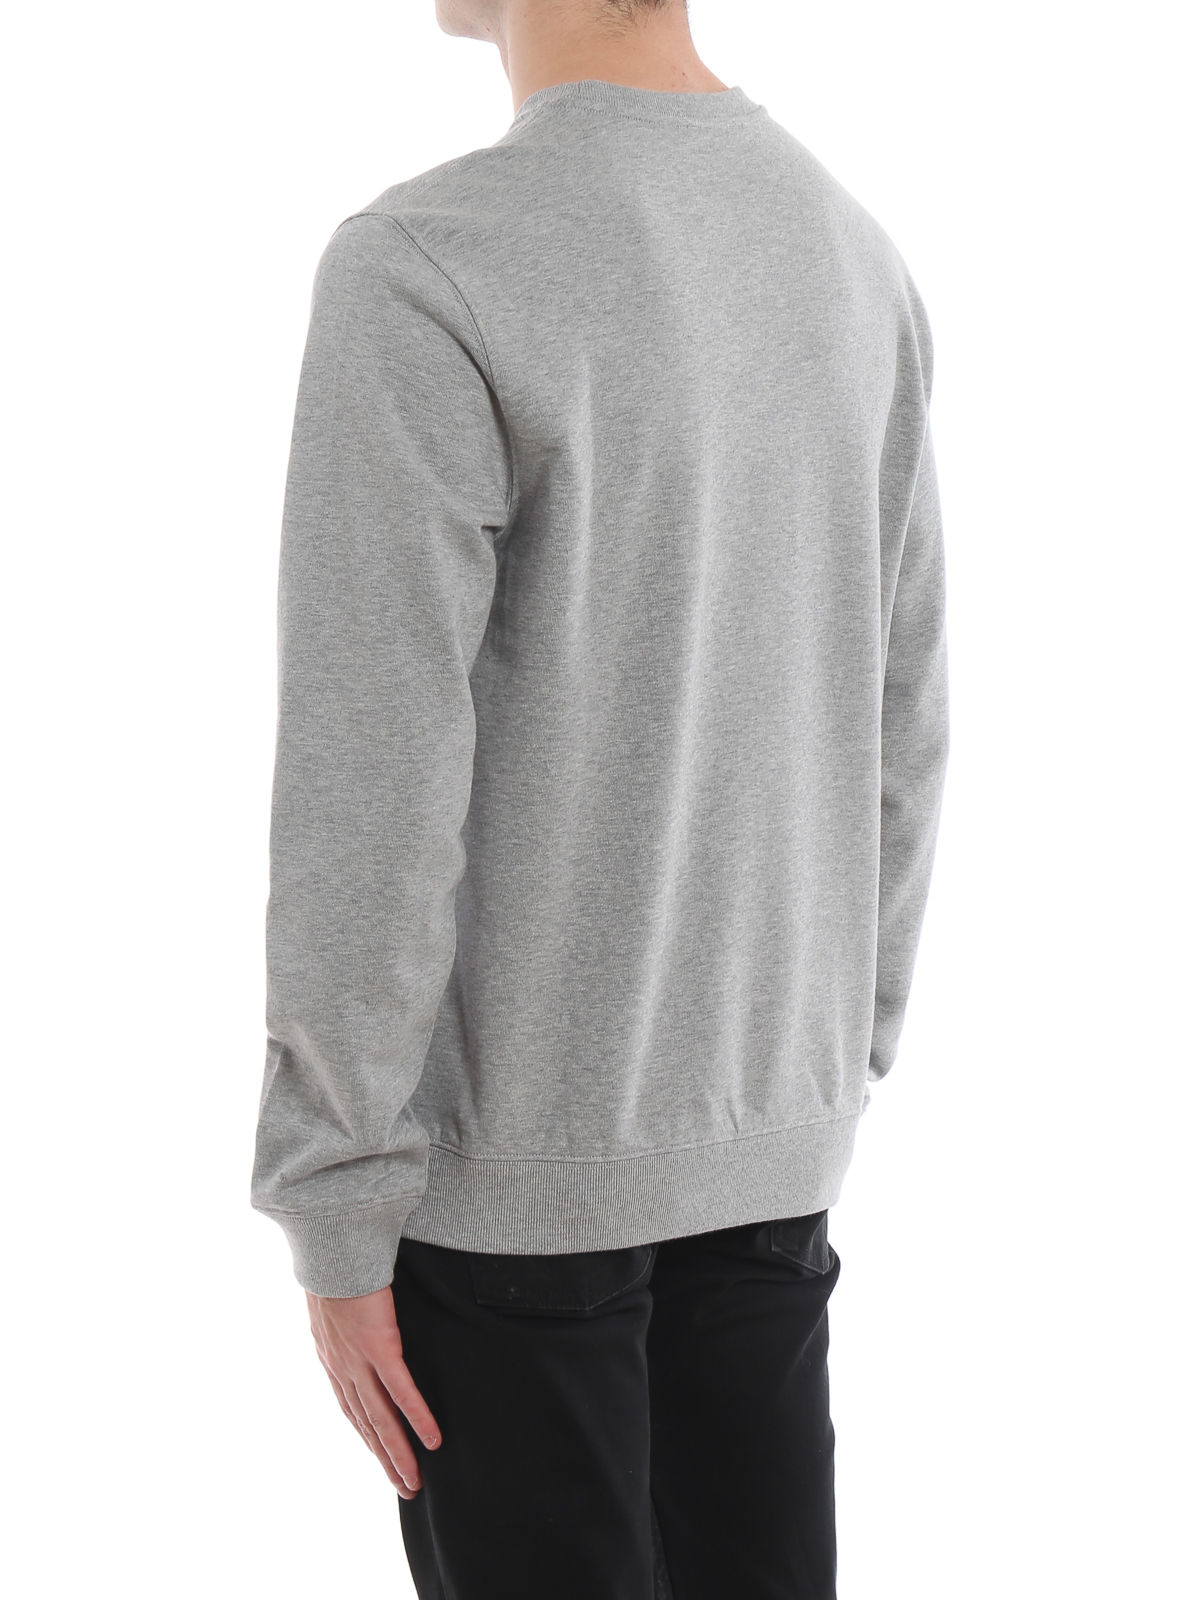 versace grey sweatshirt